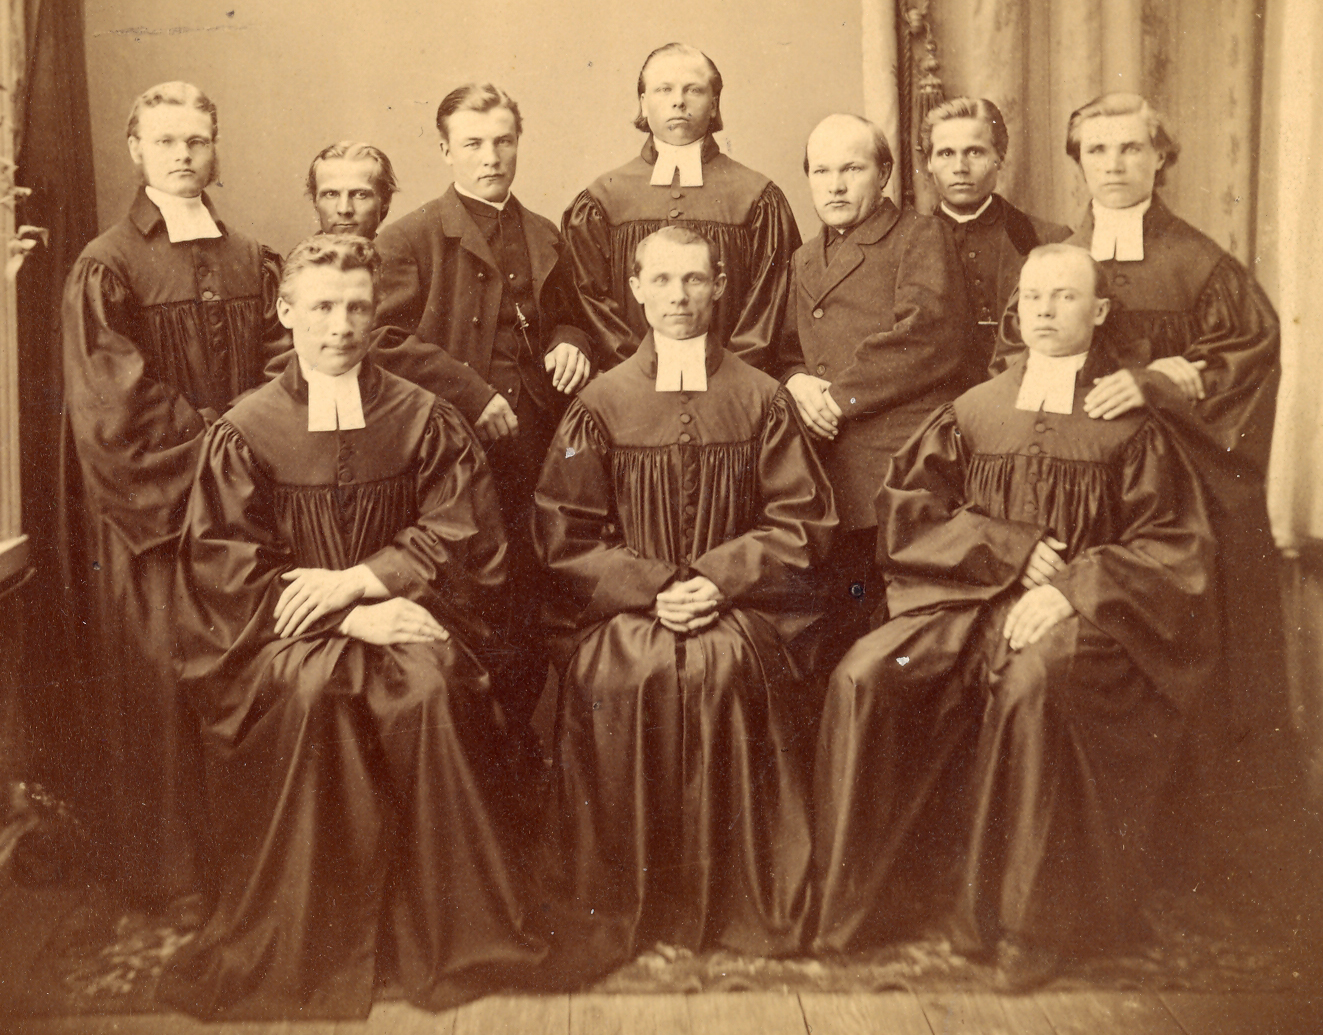 Ensimmäisen lähetyskurssin opiskelijat kurssin loputtua vuonna 1868:  Takana: K.E. Jurvelin